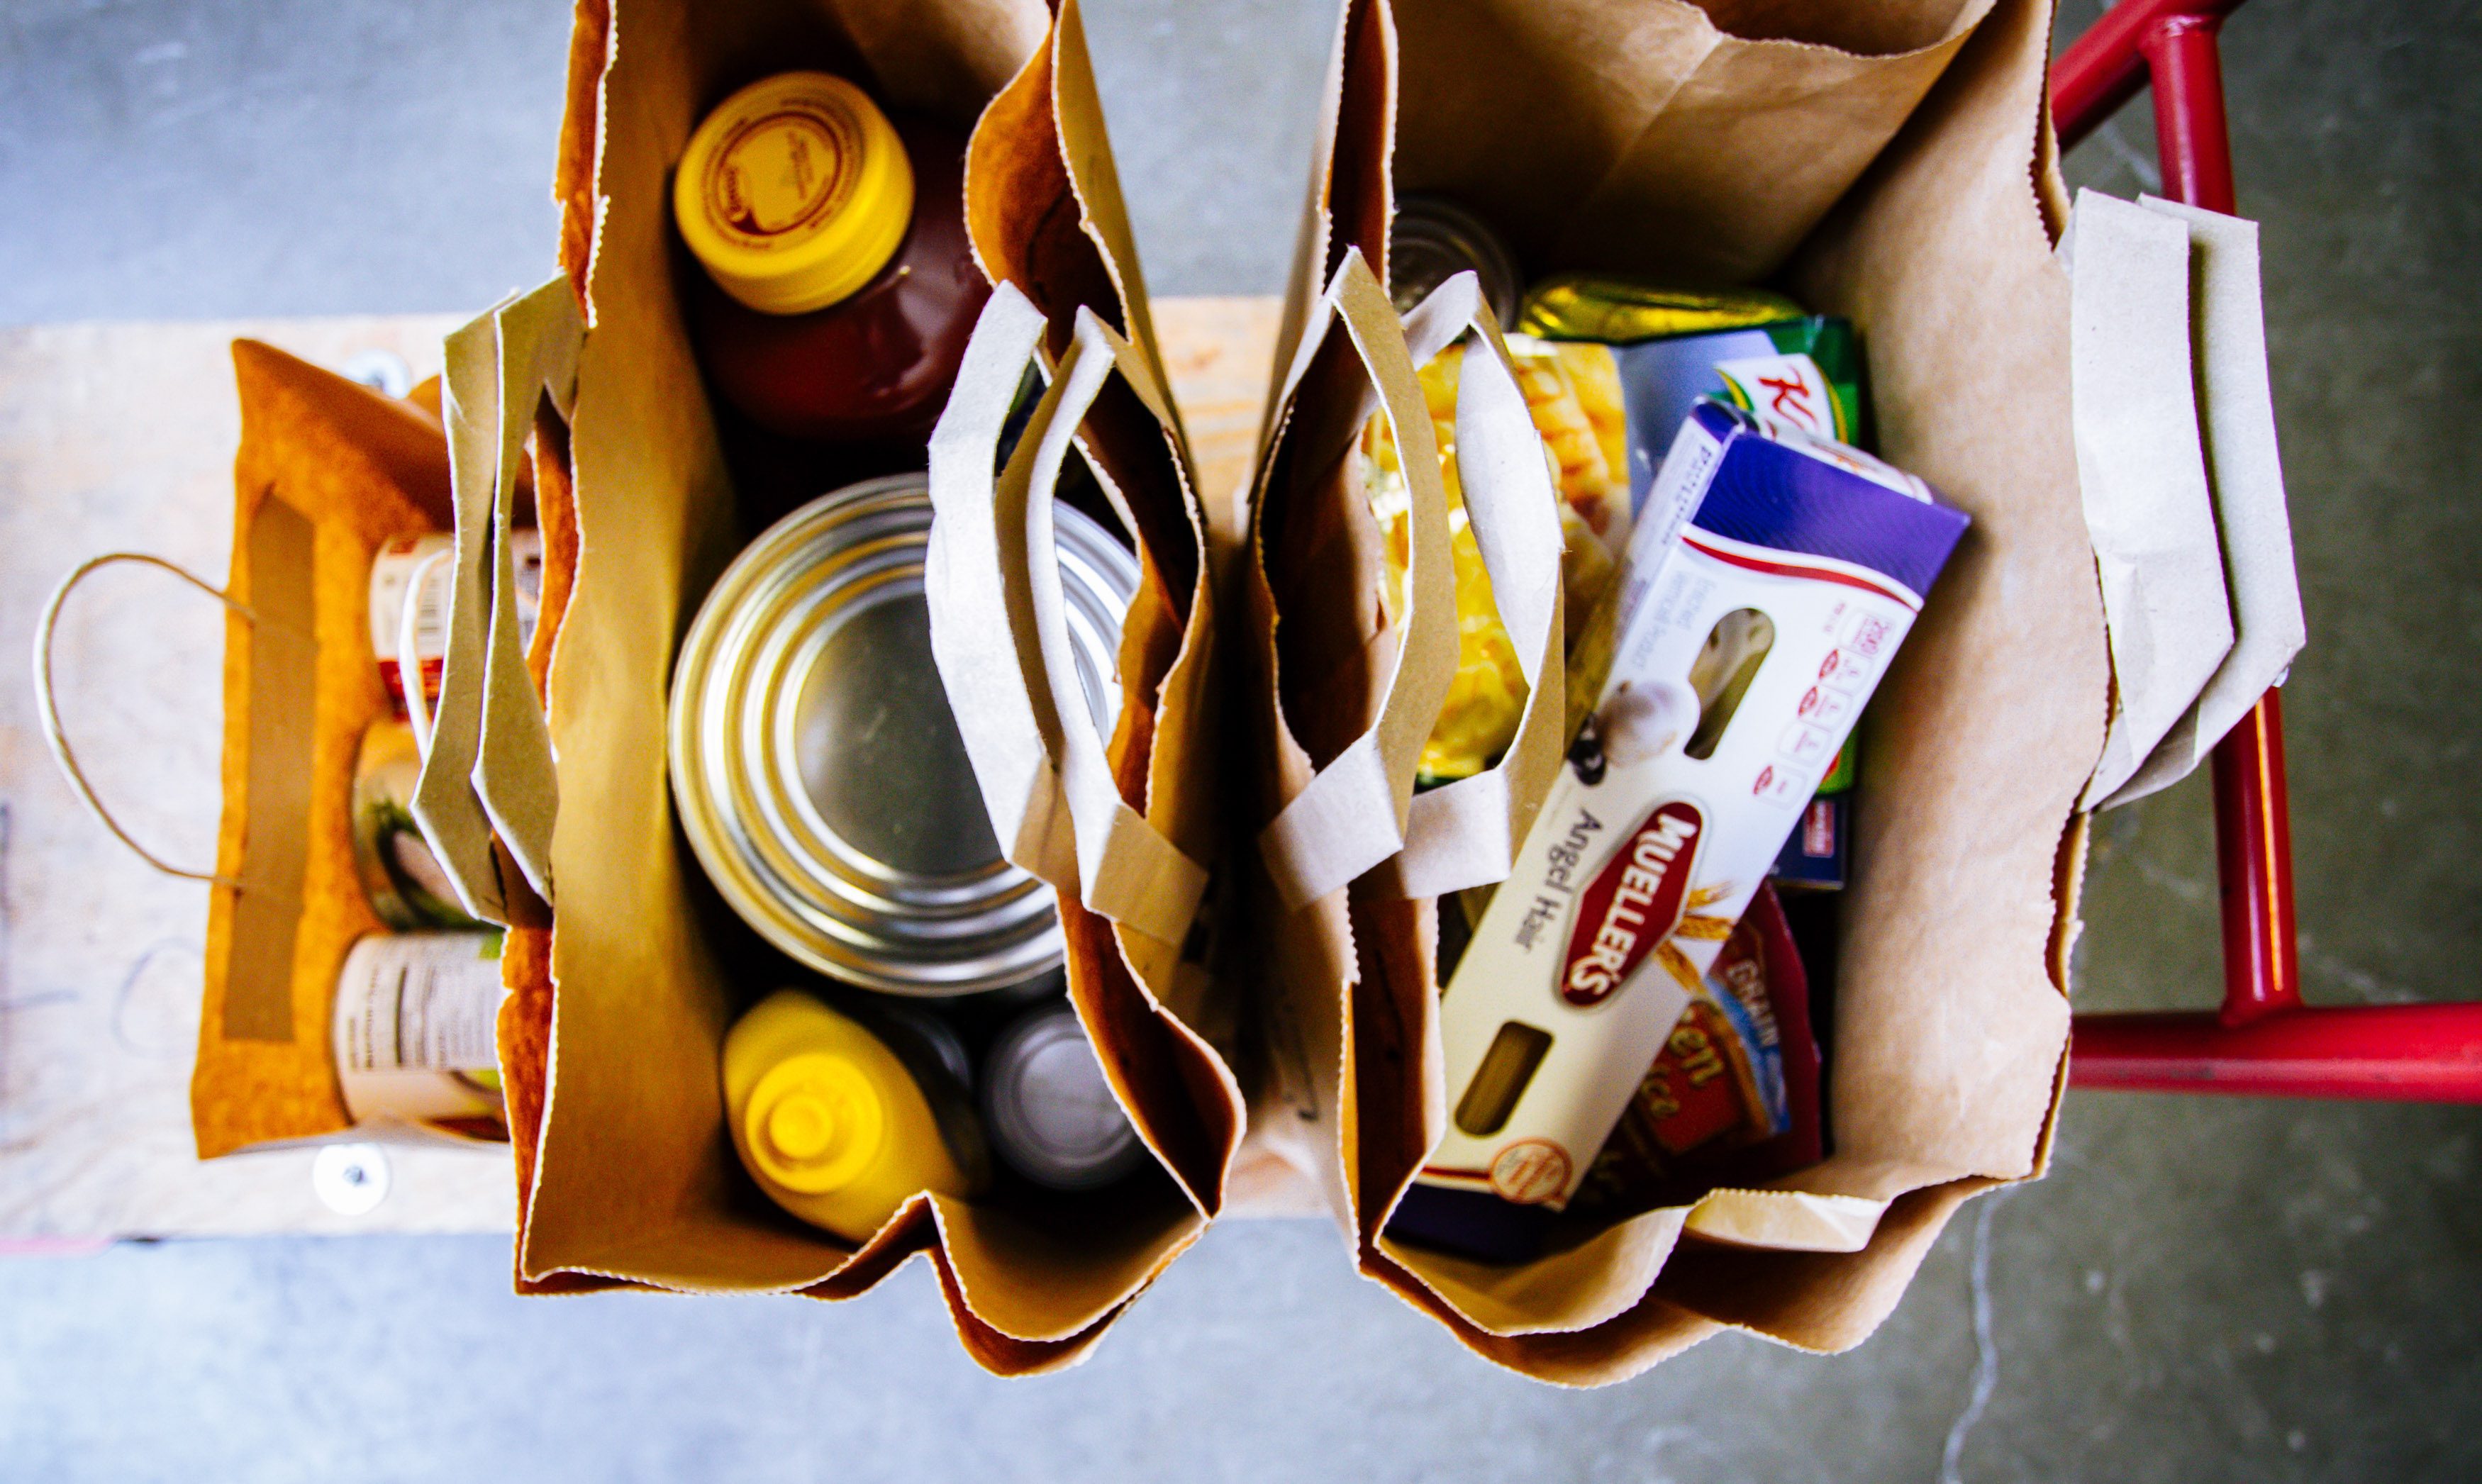 Bags of nonperishable food items. Joseph Terranova for Bread for the World